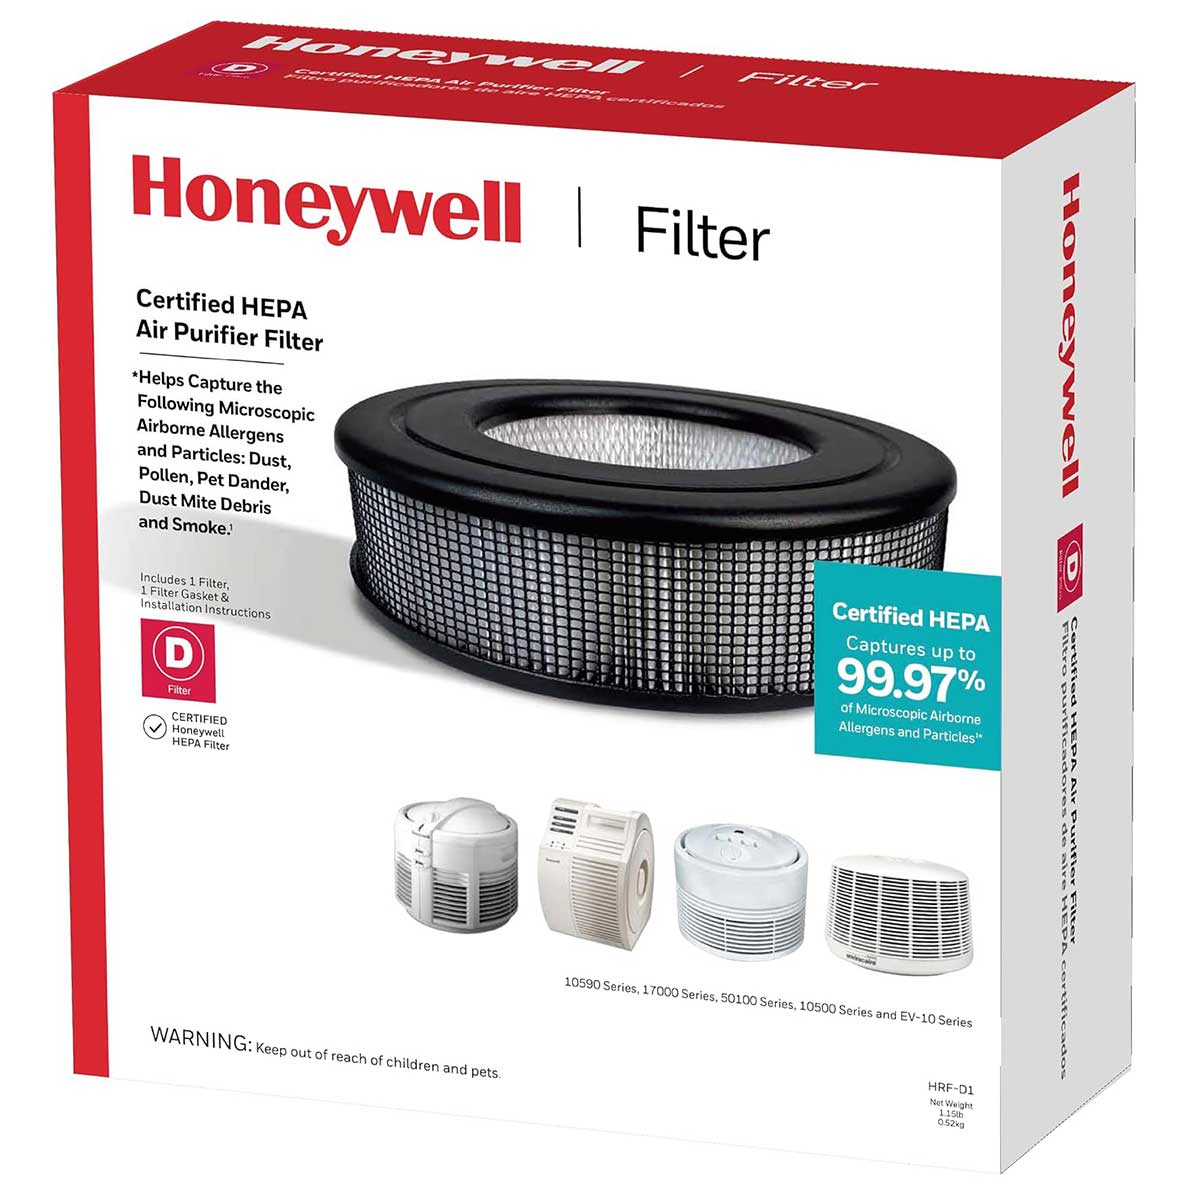 Honeywell Filter D Long Life True HEPA Replacement Filter, HRF-D1